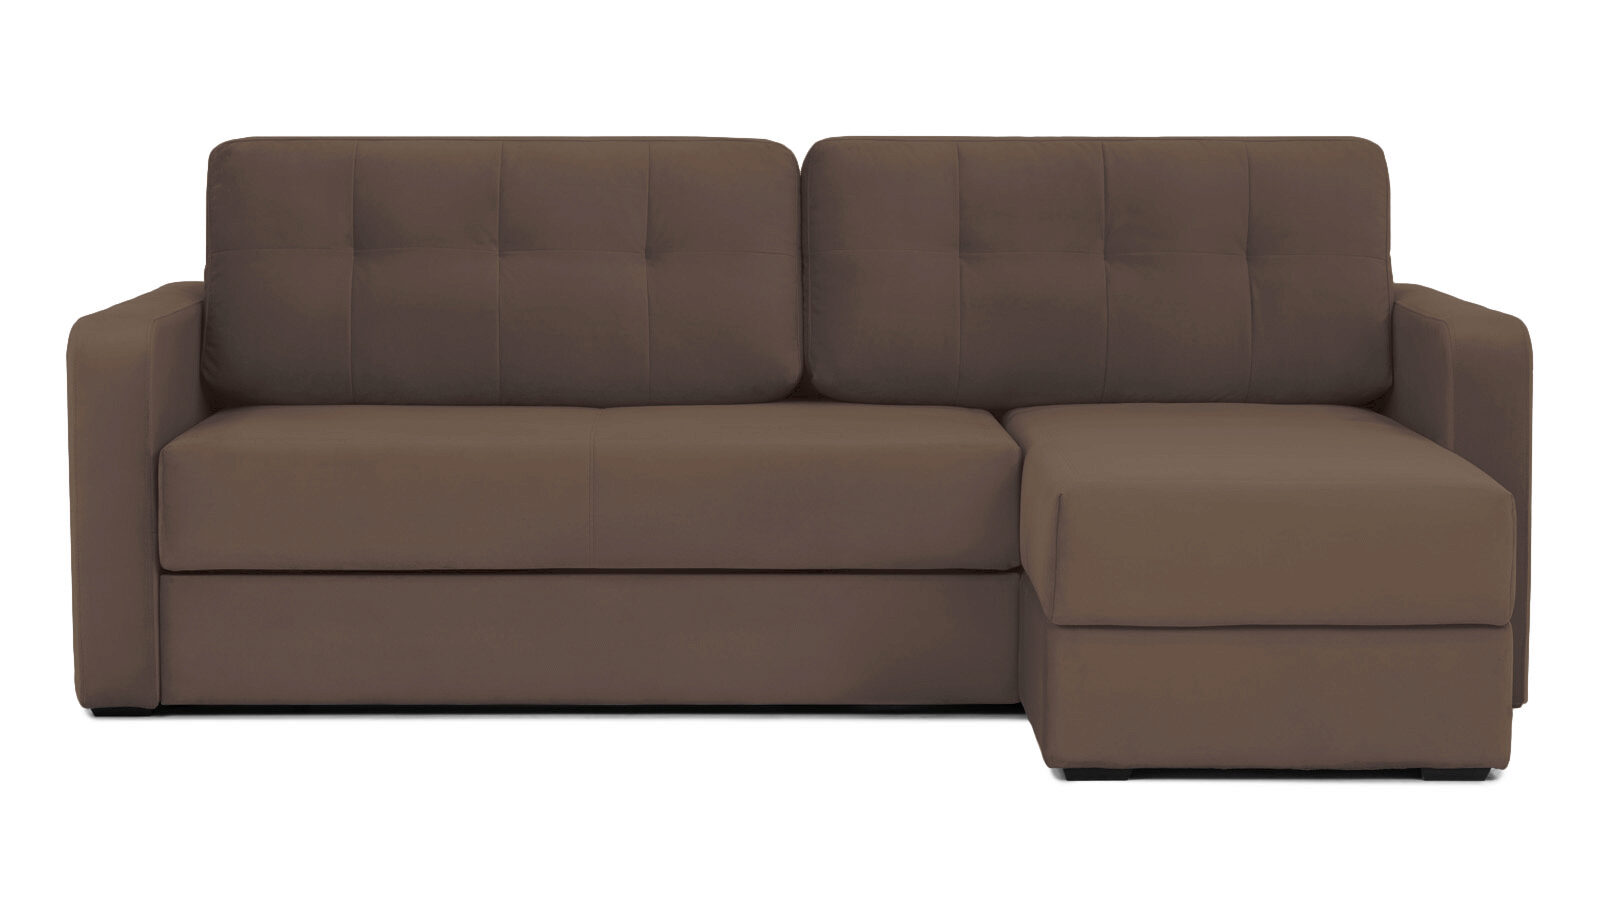 Угловой диван Loko Pro с широкими подлокотниками, с мягким матрасом Askona